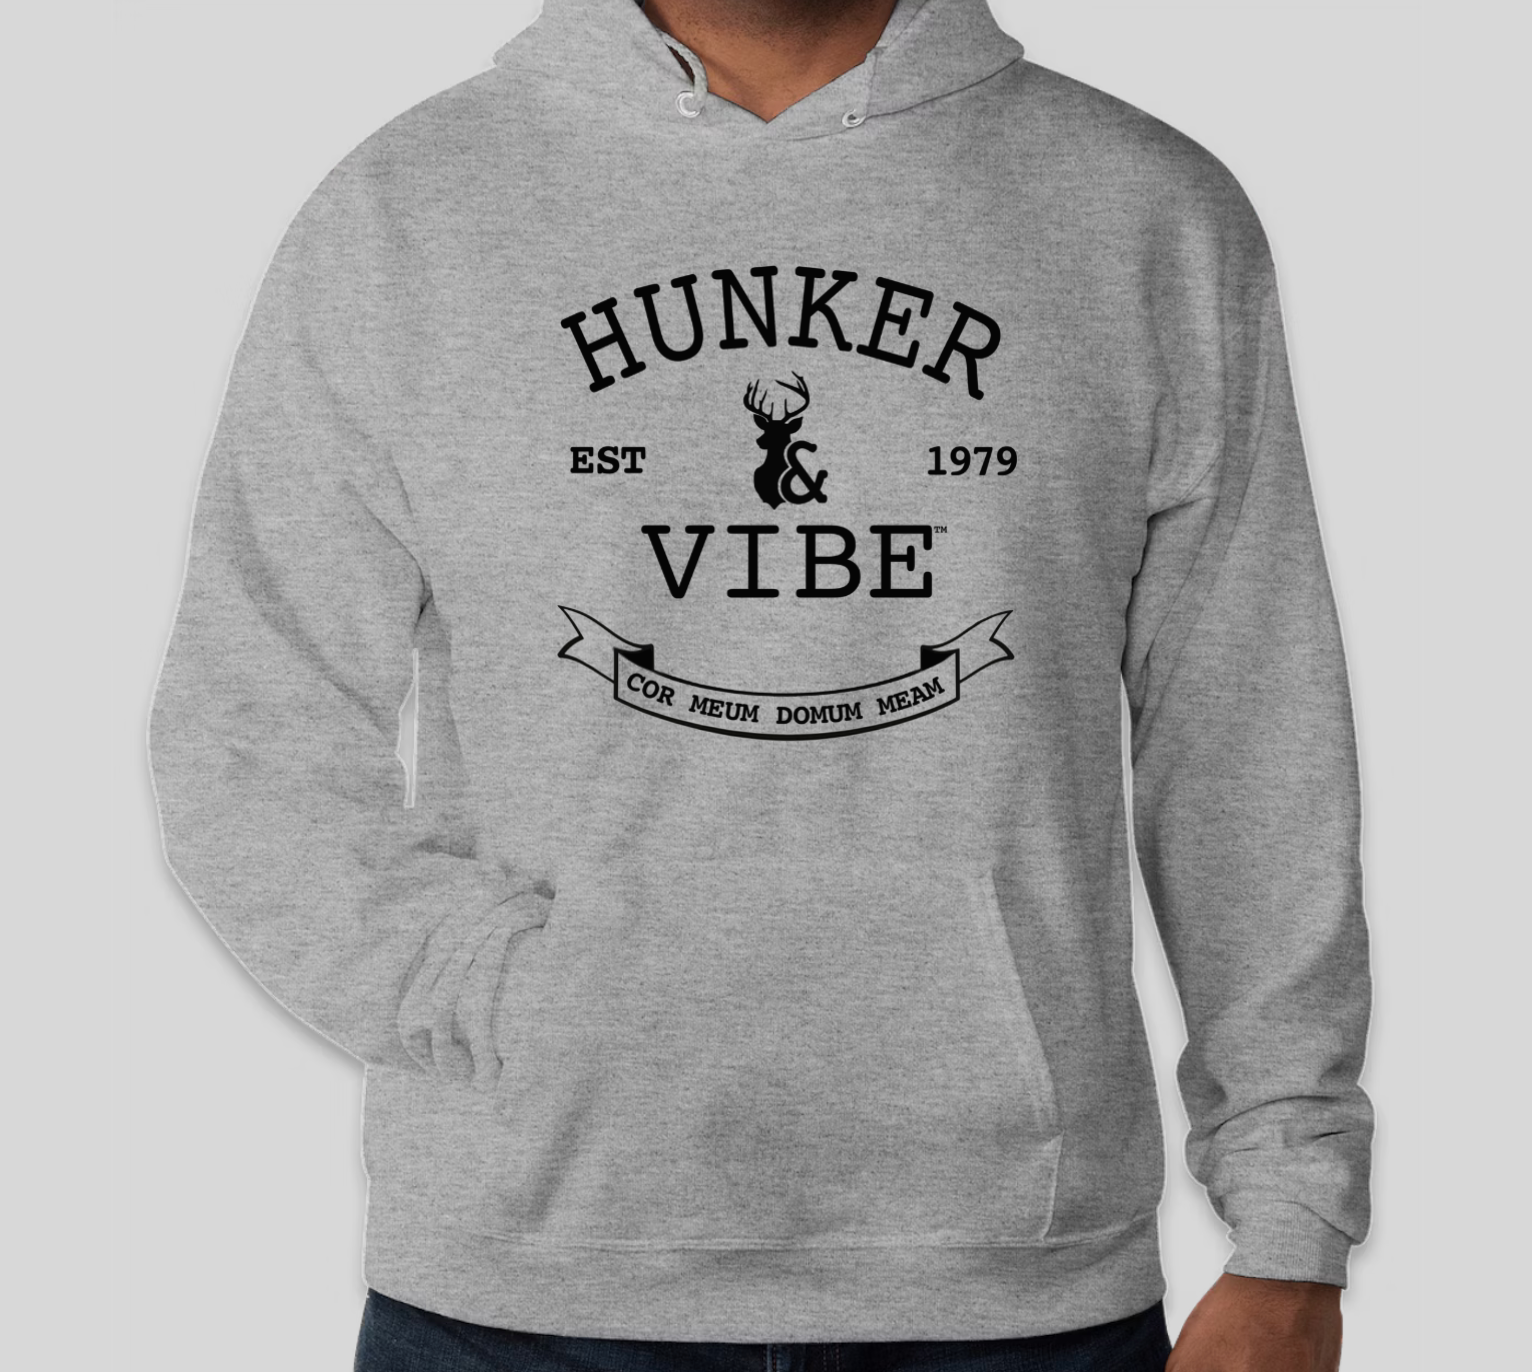 The Hunker & Vibe Varsity Hoodie